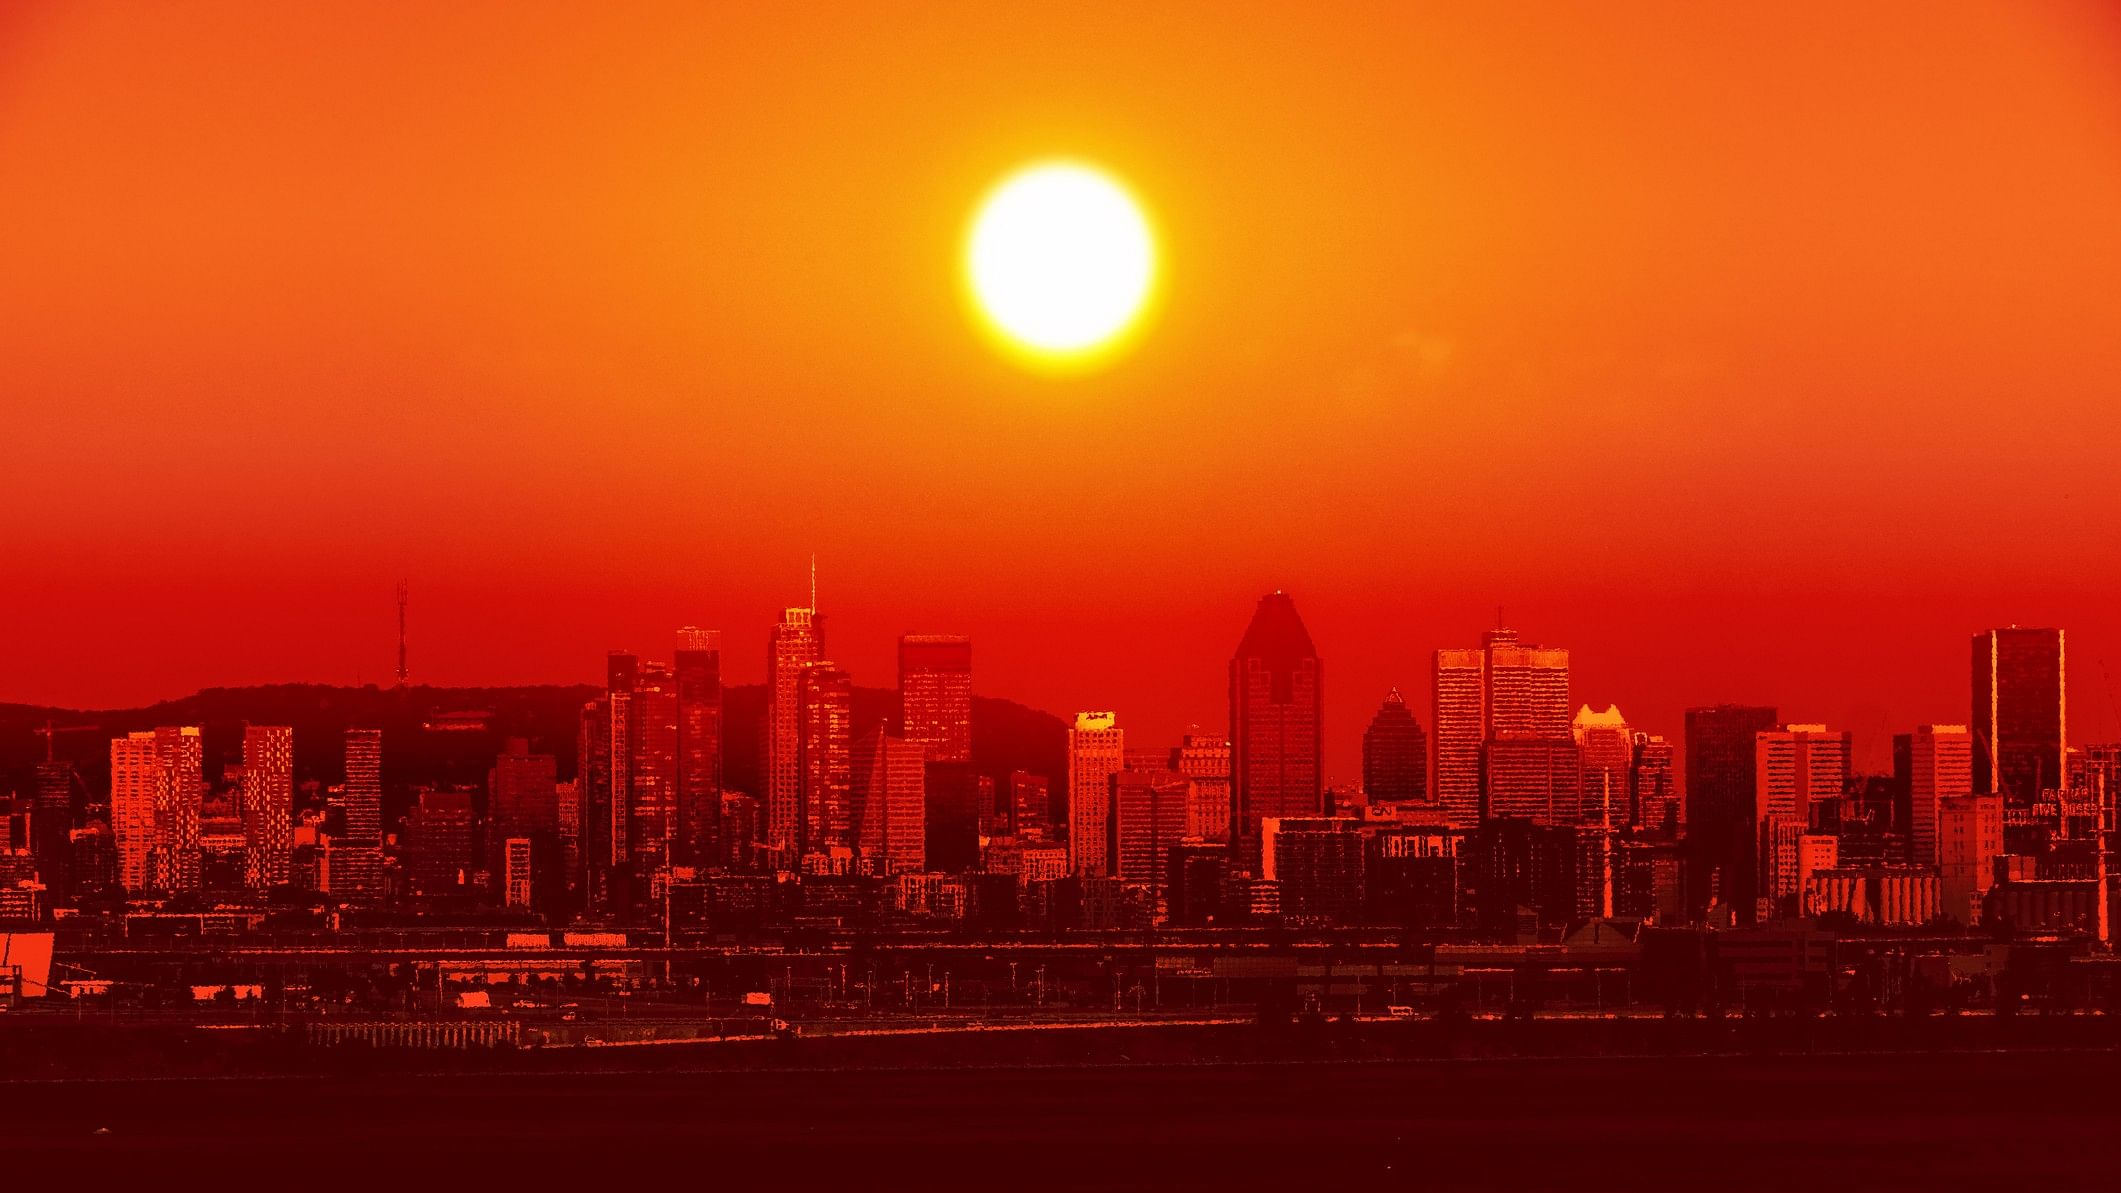 <div class="paragraphs"><p>Representative image showing a city reeling under an extreme heatwave.</p></div>